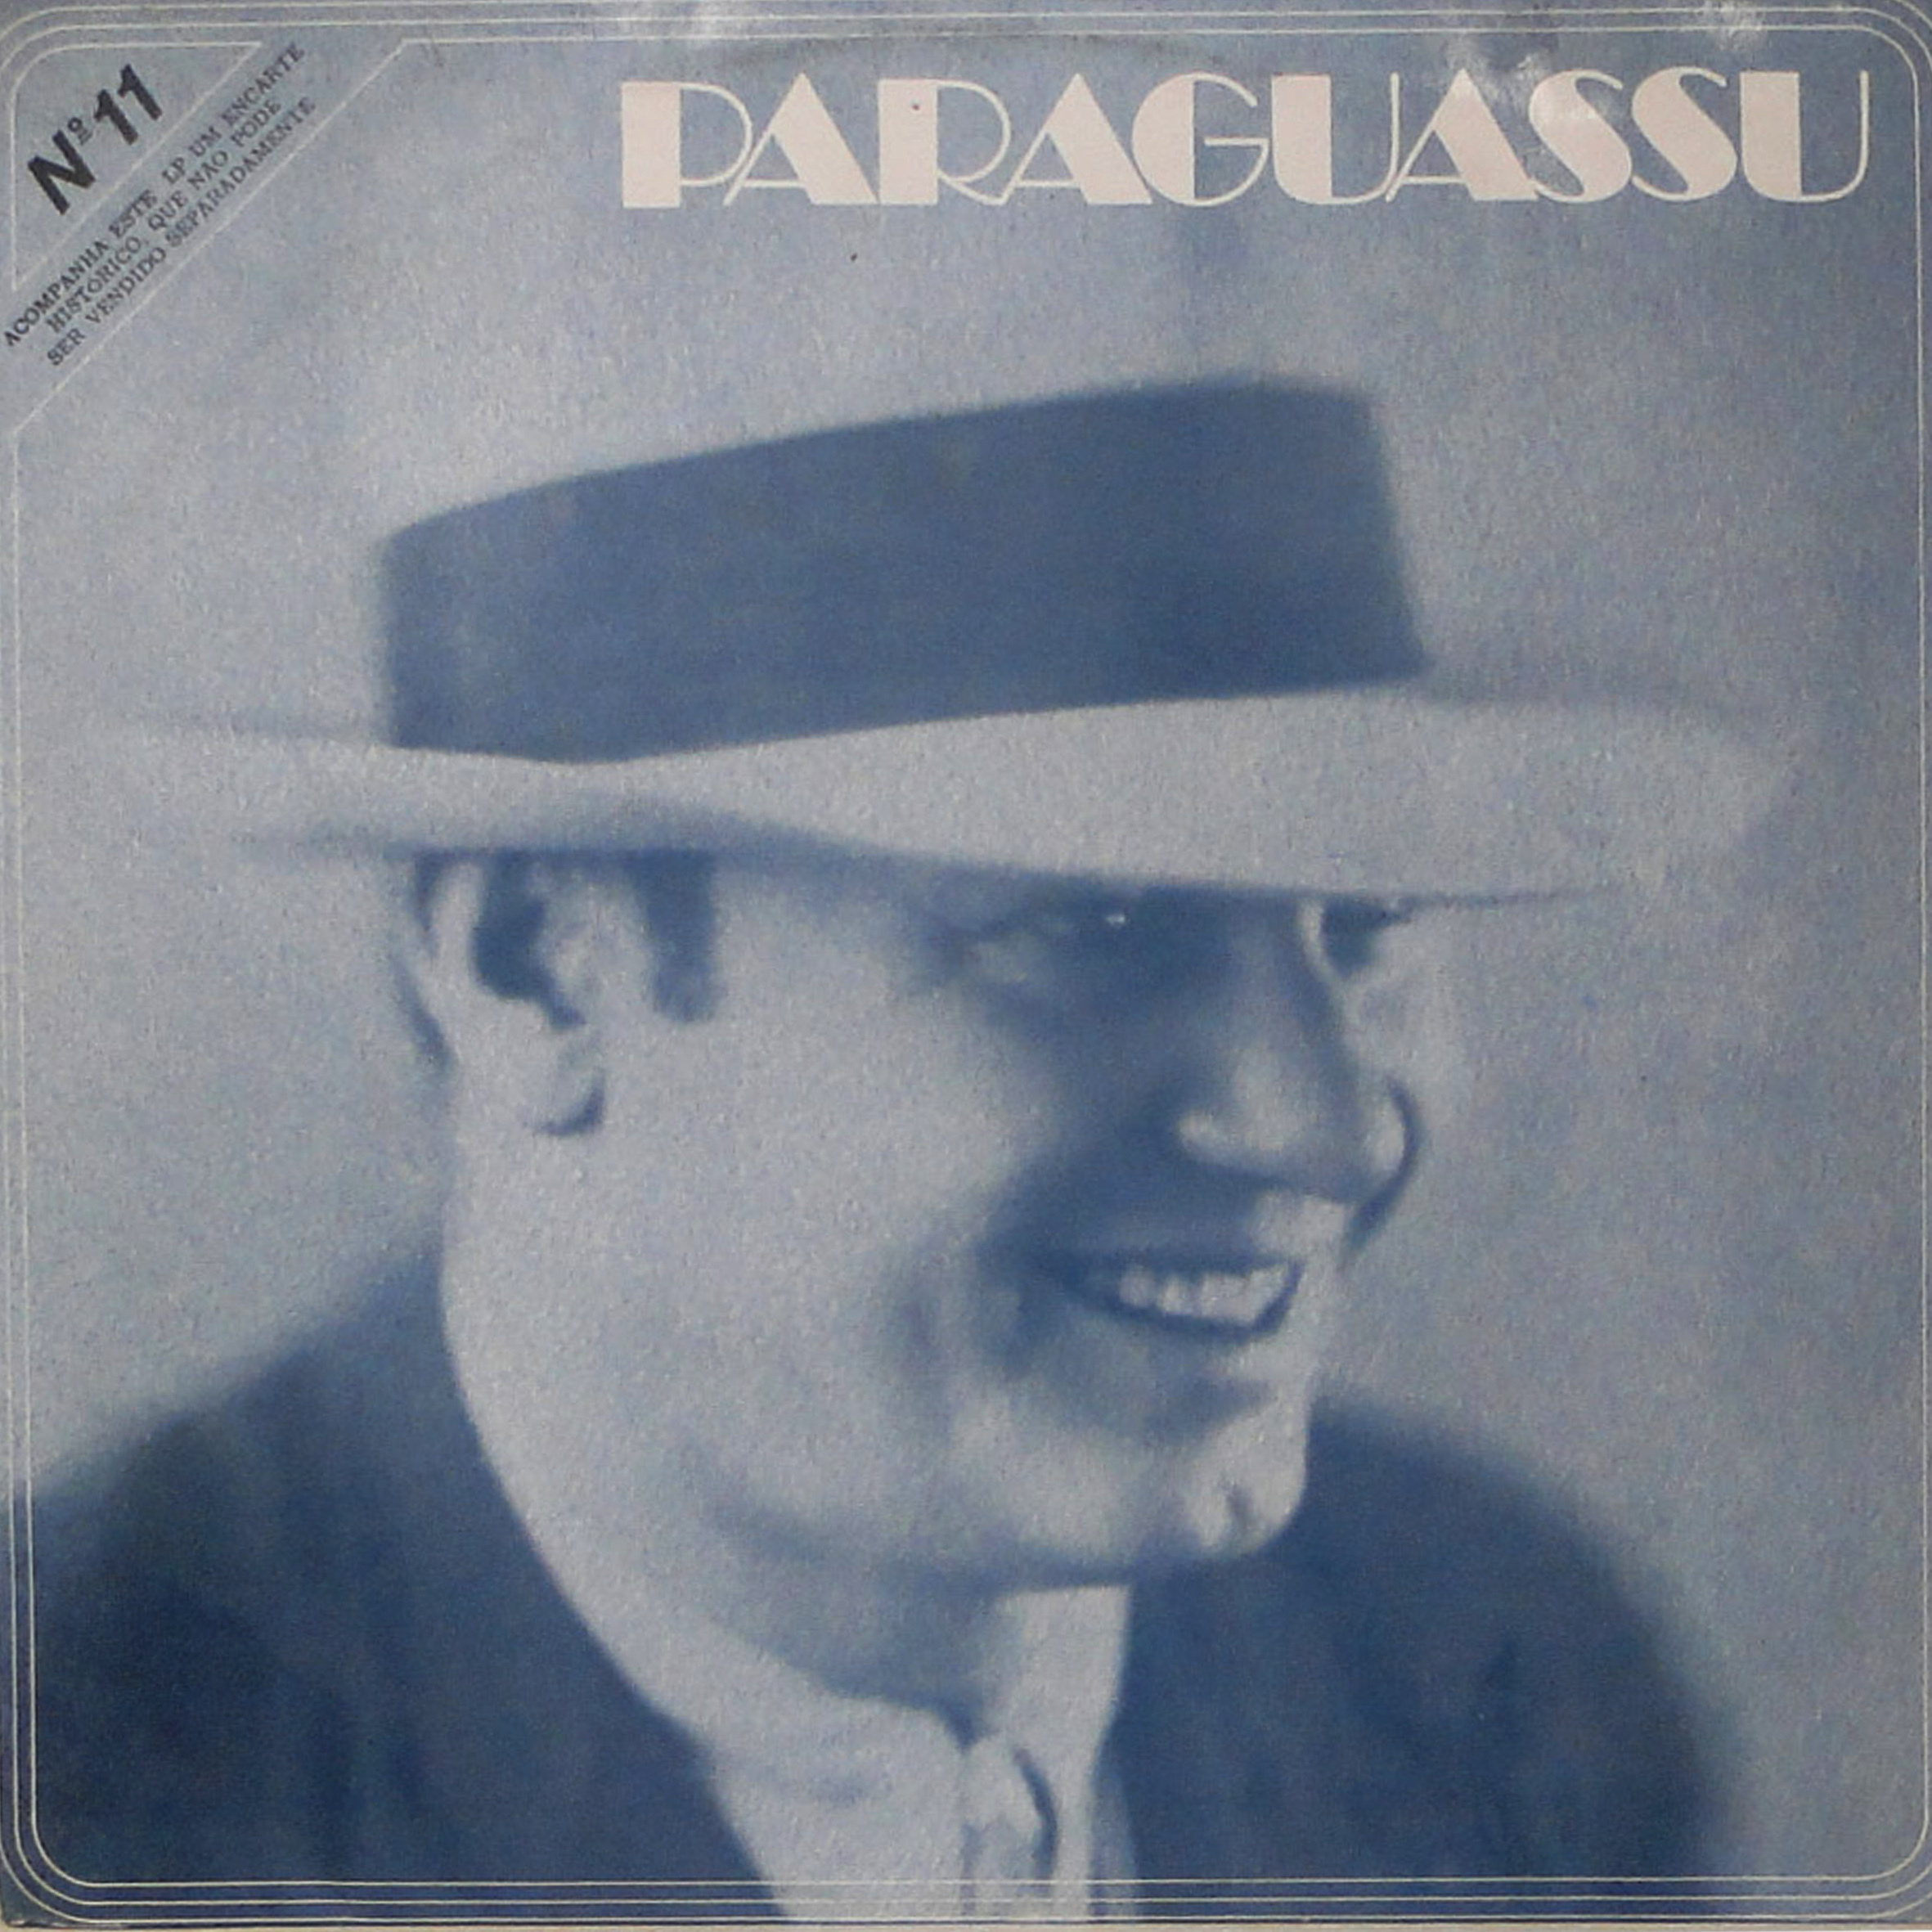 Vinil - Paraguassu - 1975